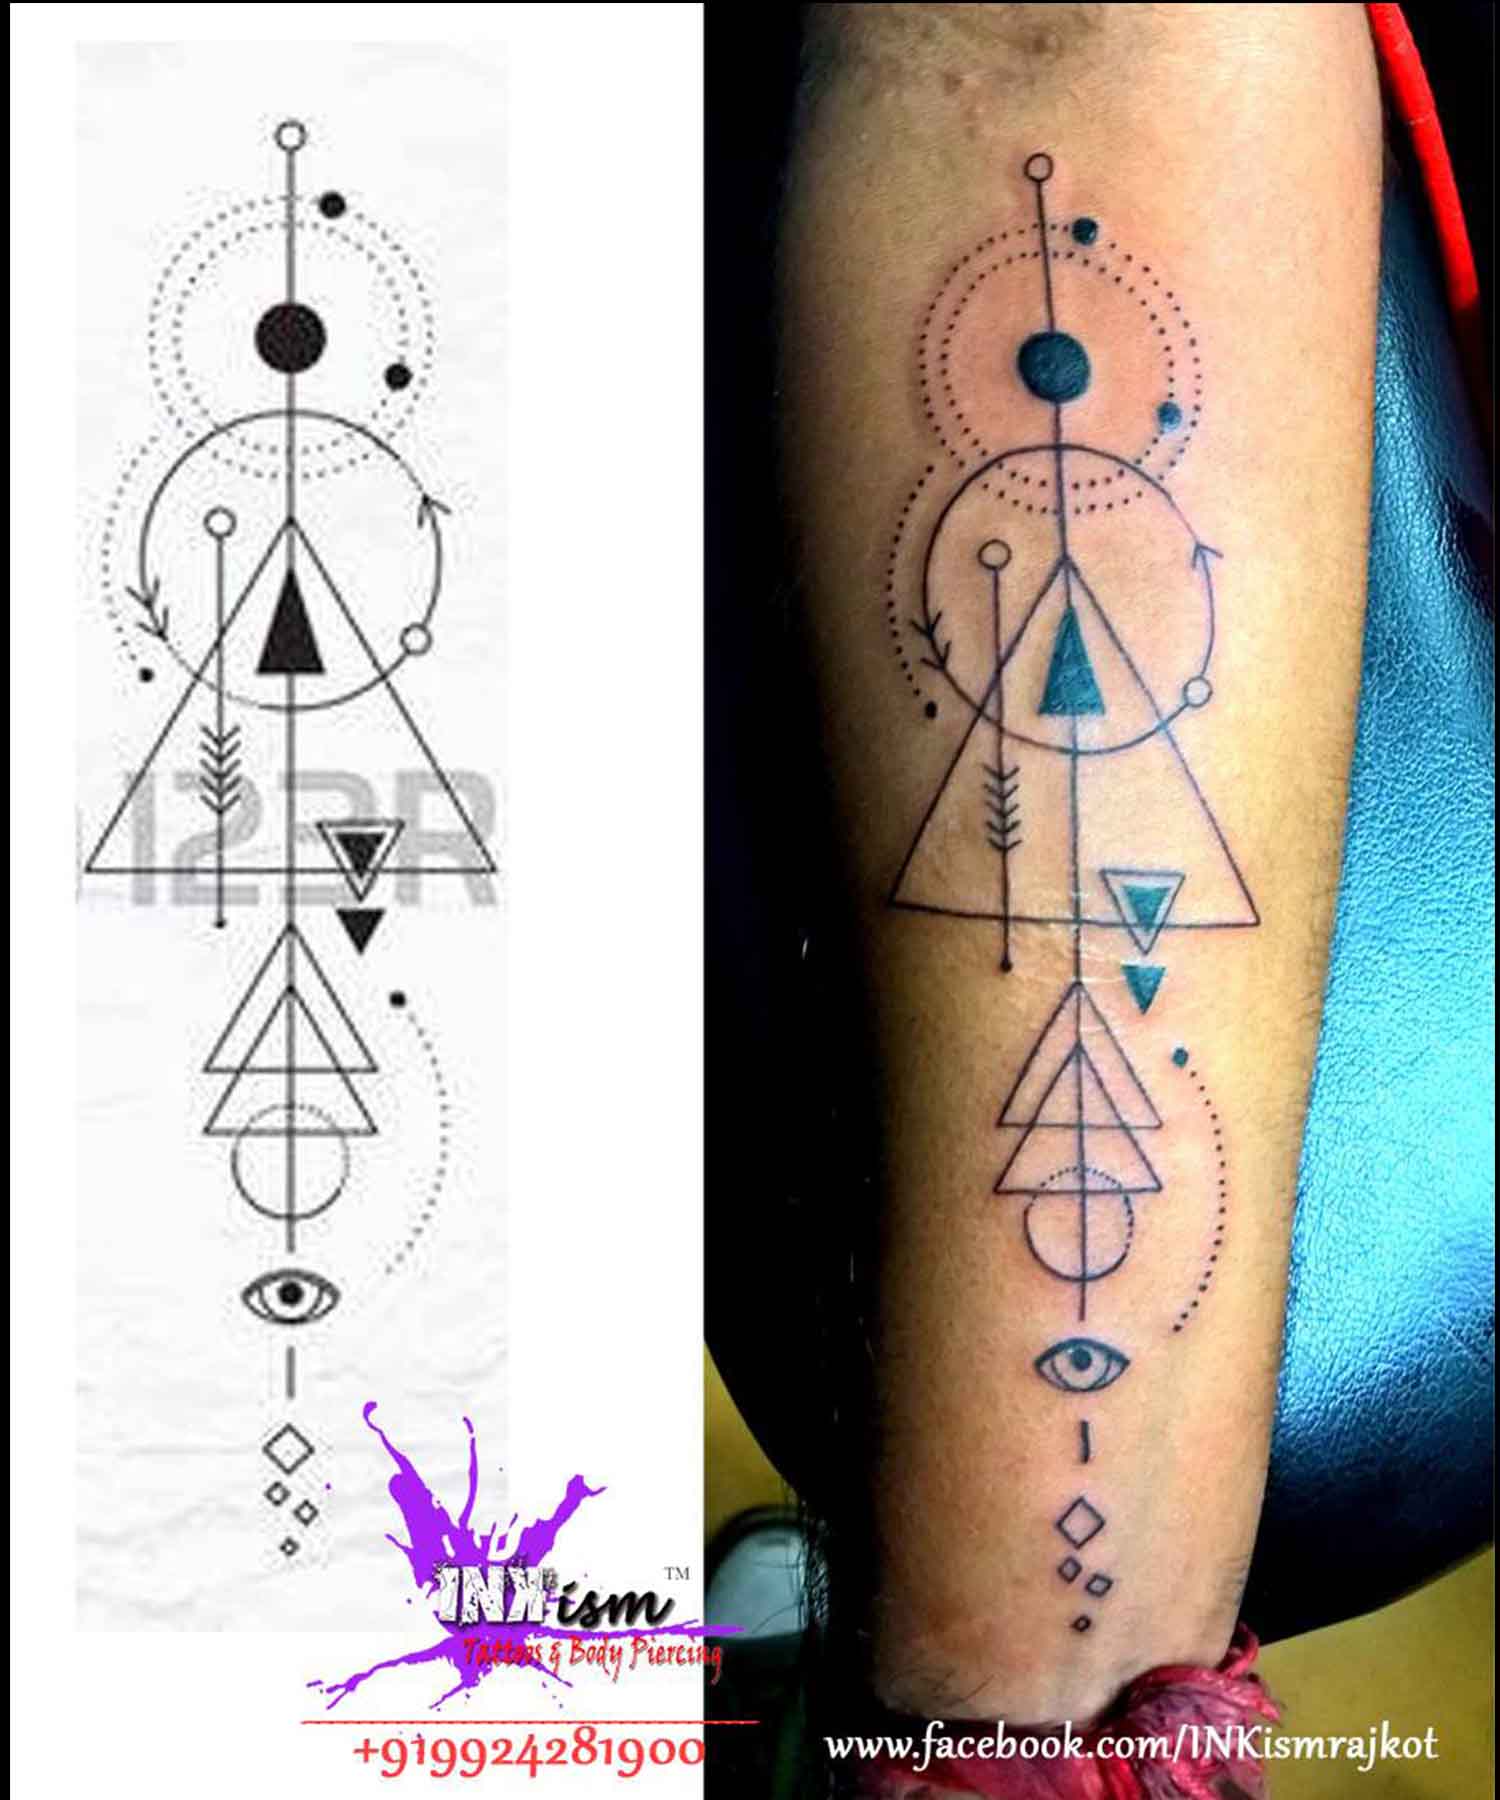 Alchemy tattoo, Eye sun moon stars tattoo, Spiritual tattoo, Religion Tattoo, Inkism tattoo and body piercing rajkot gujarat